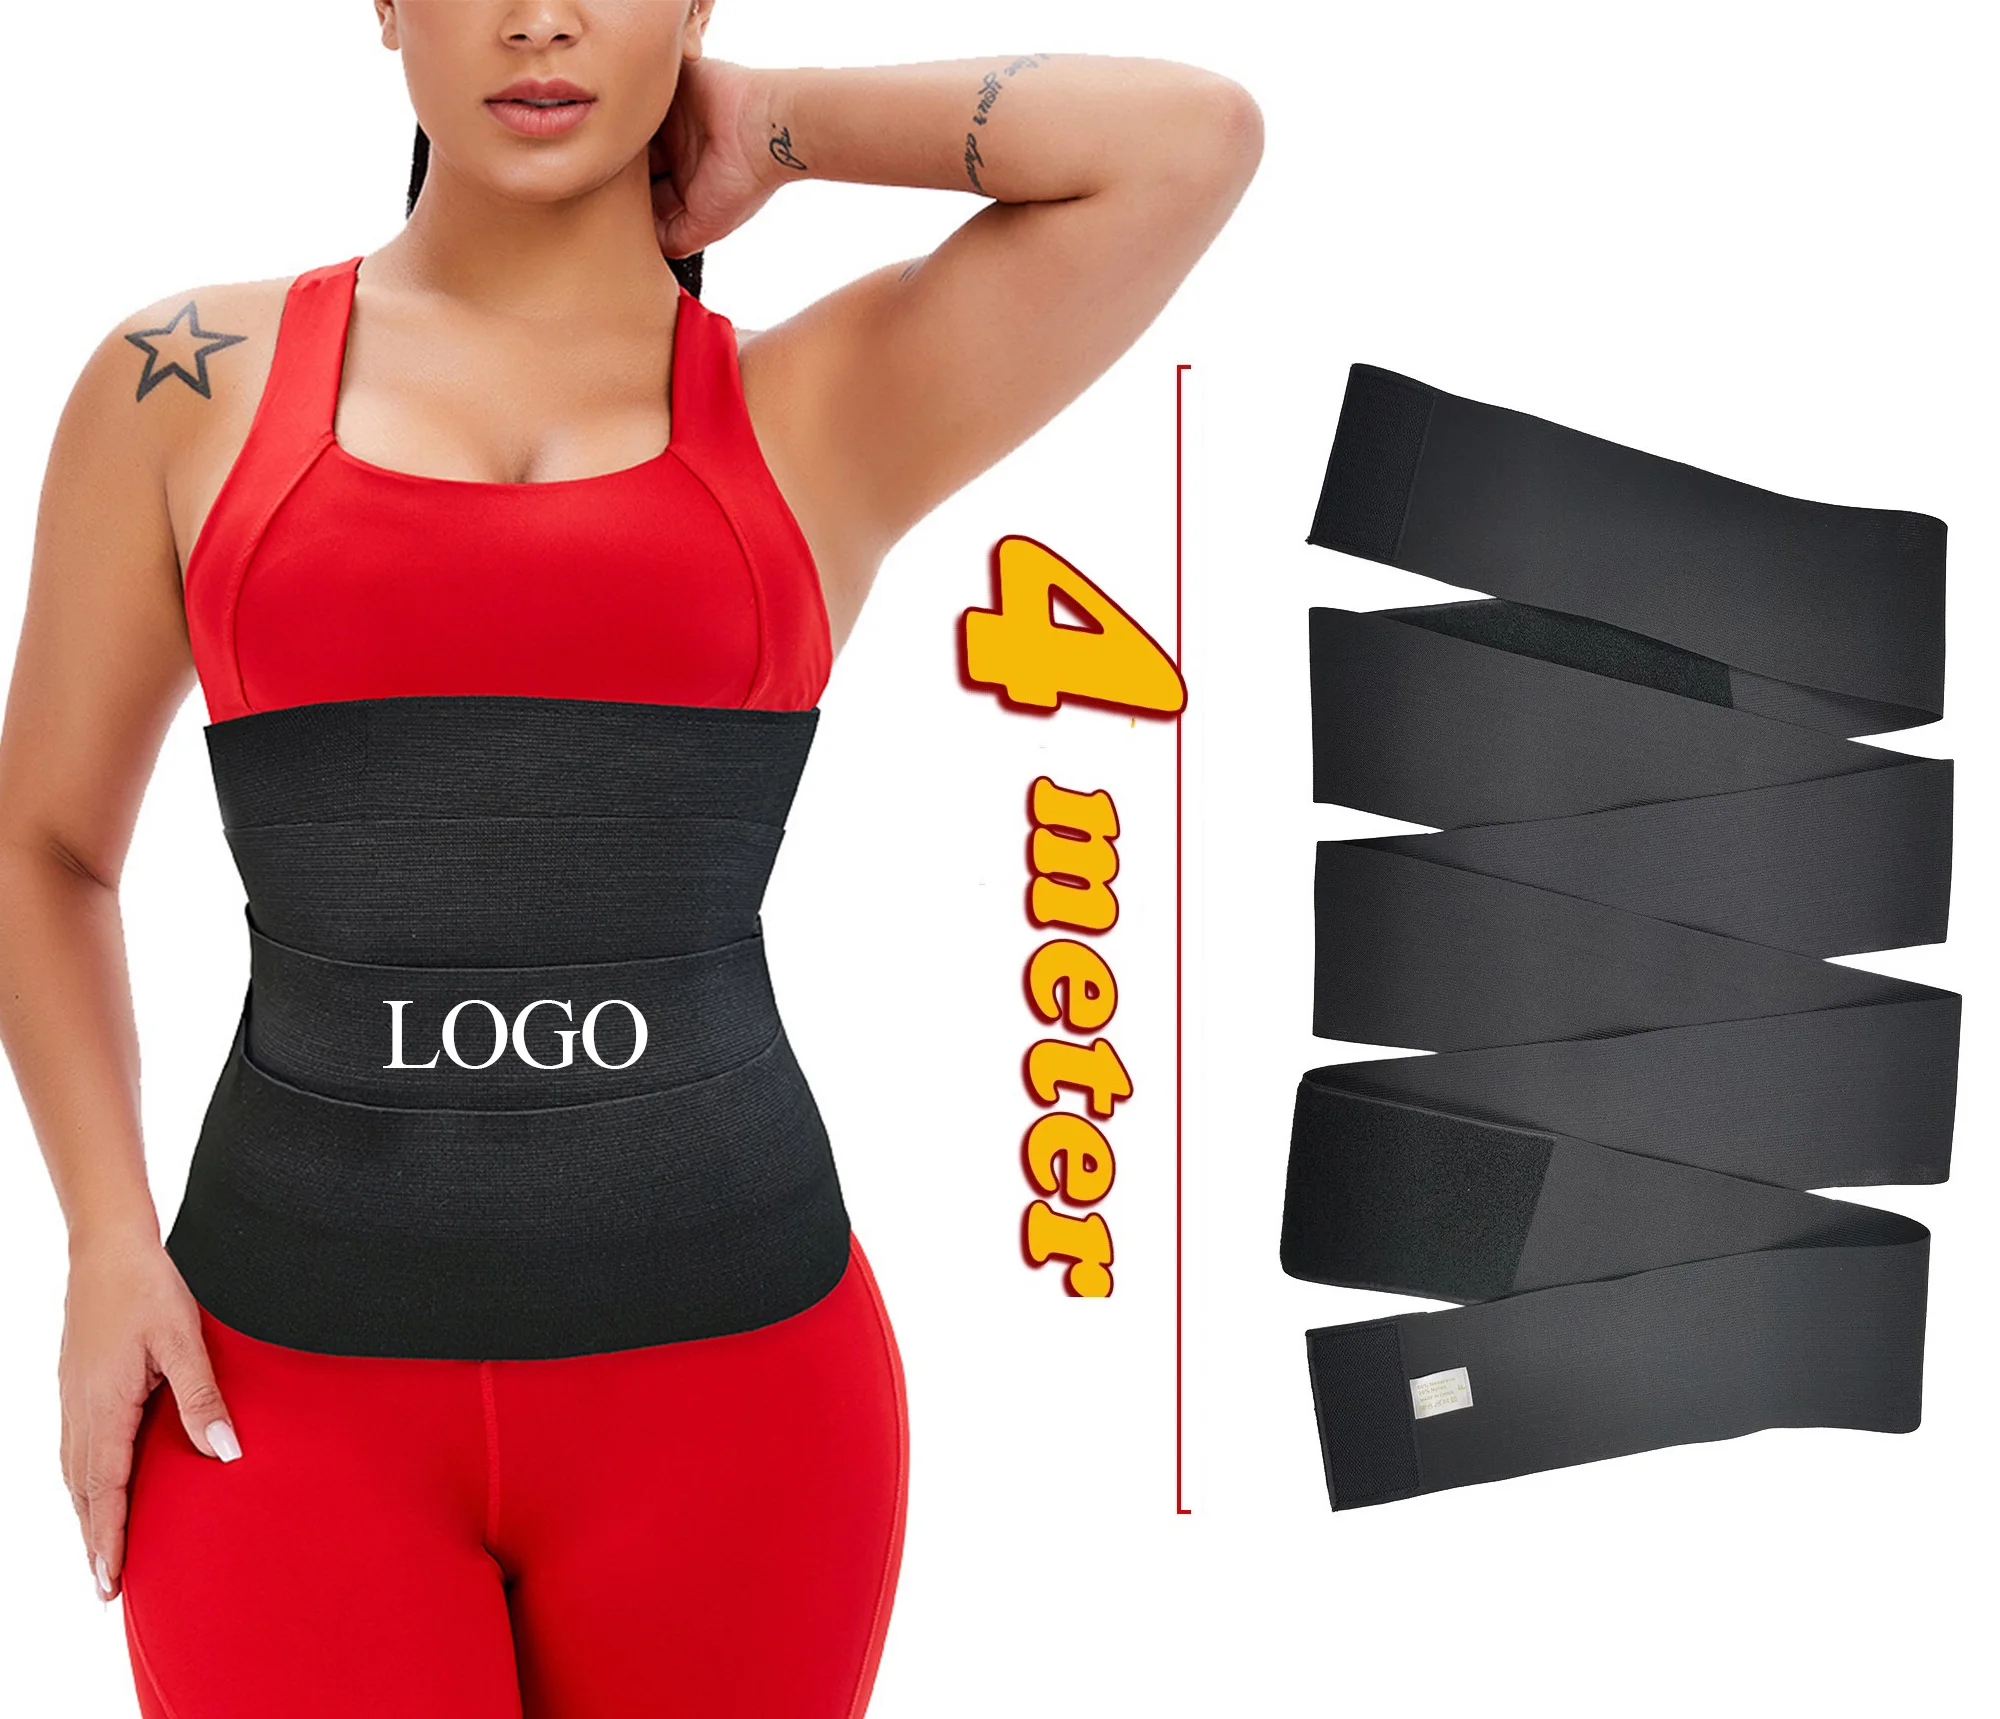 

Wholesale Women Body Shaper Slim Belt Tummy Control Shapewear Women's Shapers Sweat Neoprene Waist Trainer 3 meter Ace bandage, Black